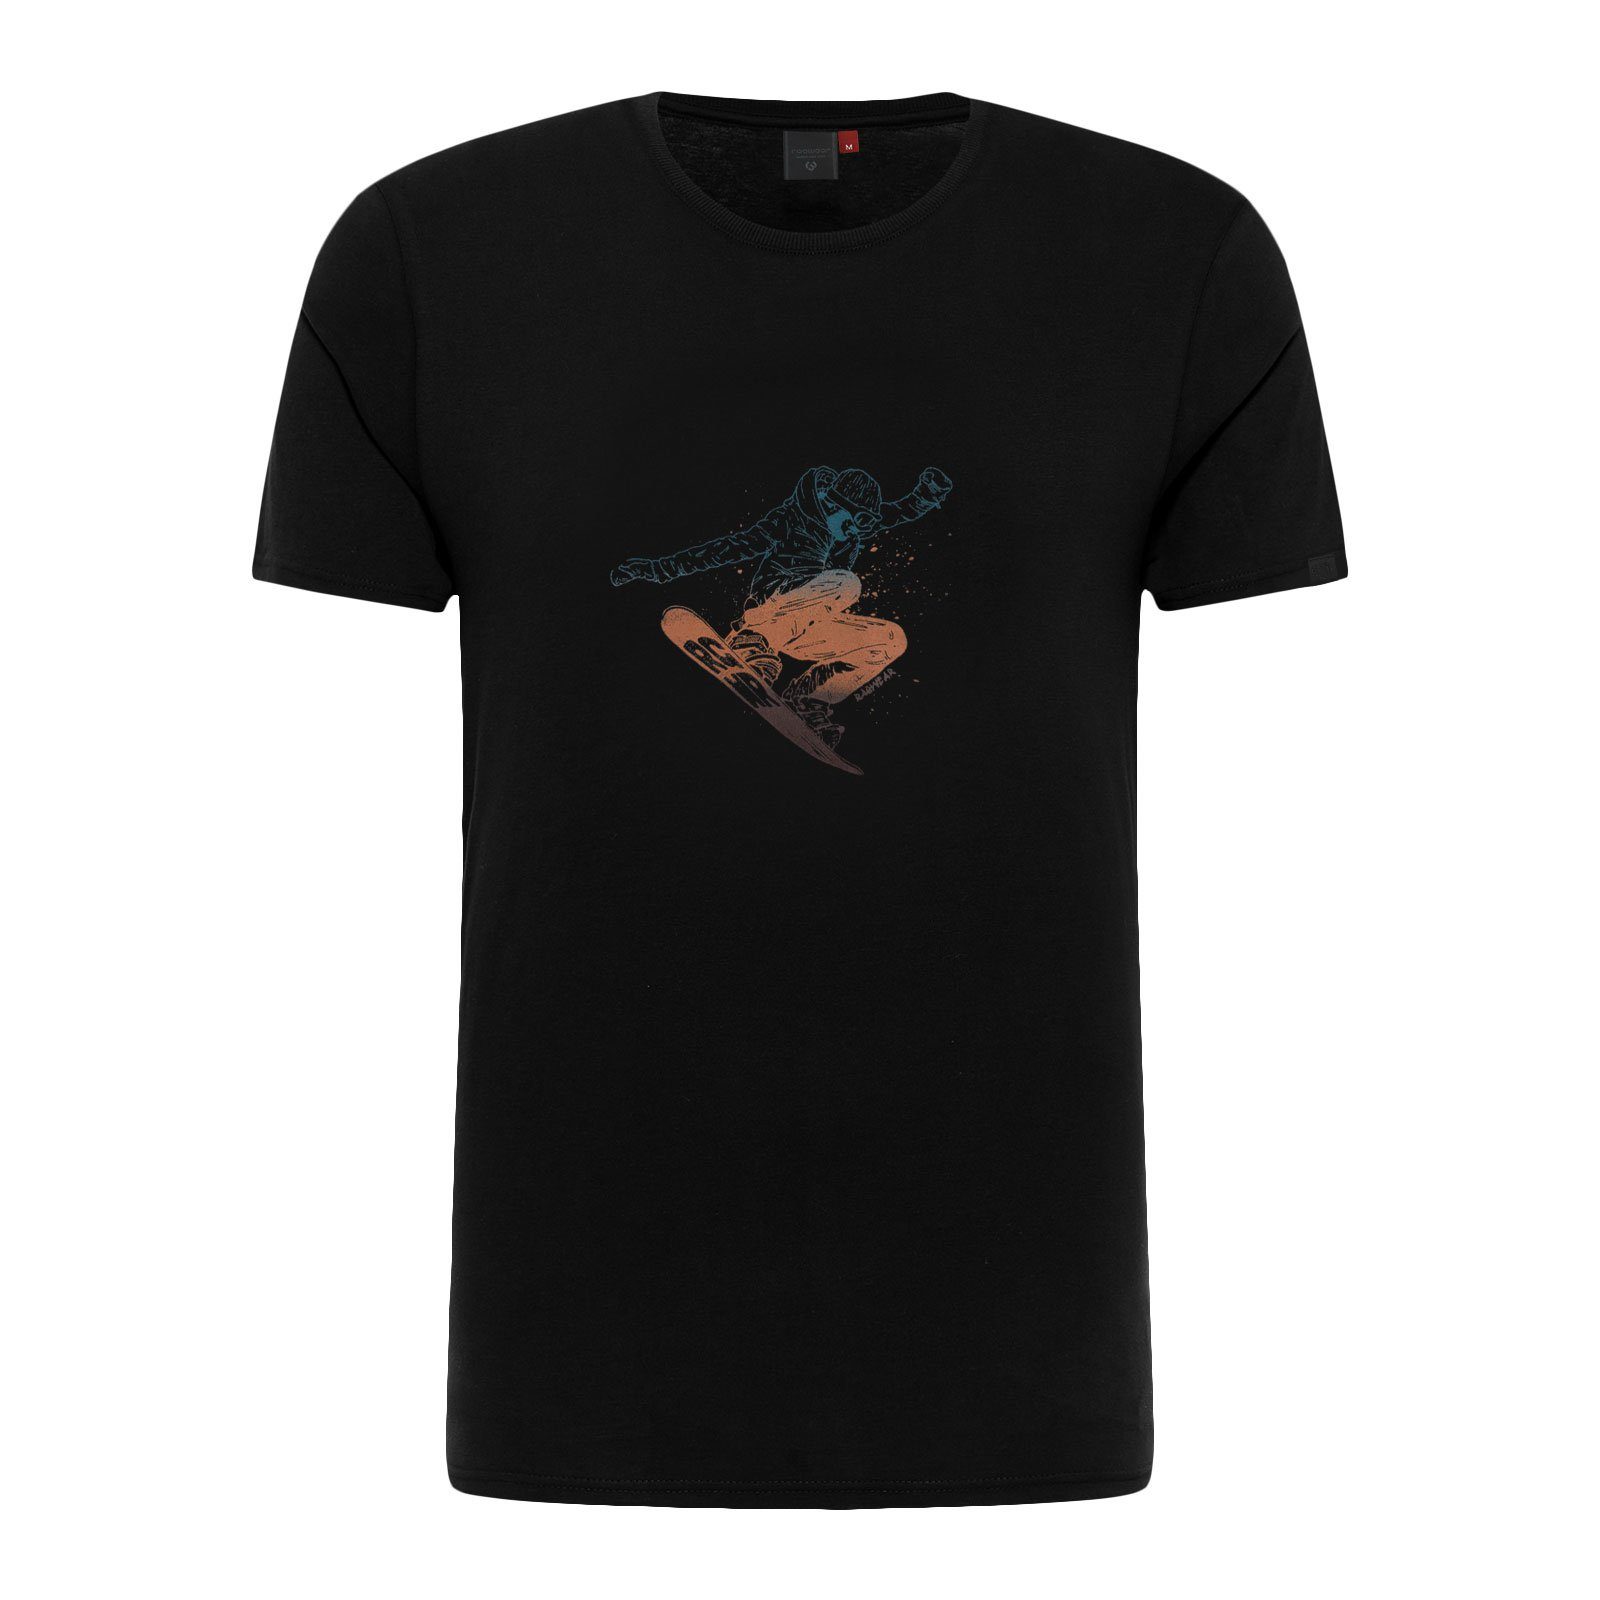 Snowboard-Print T-Shirt Rogger Ragwear coolem mit 1010 black